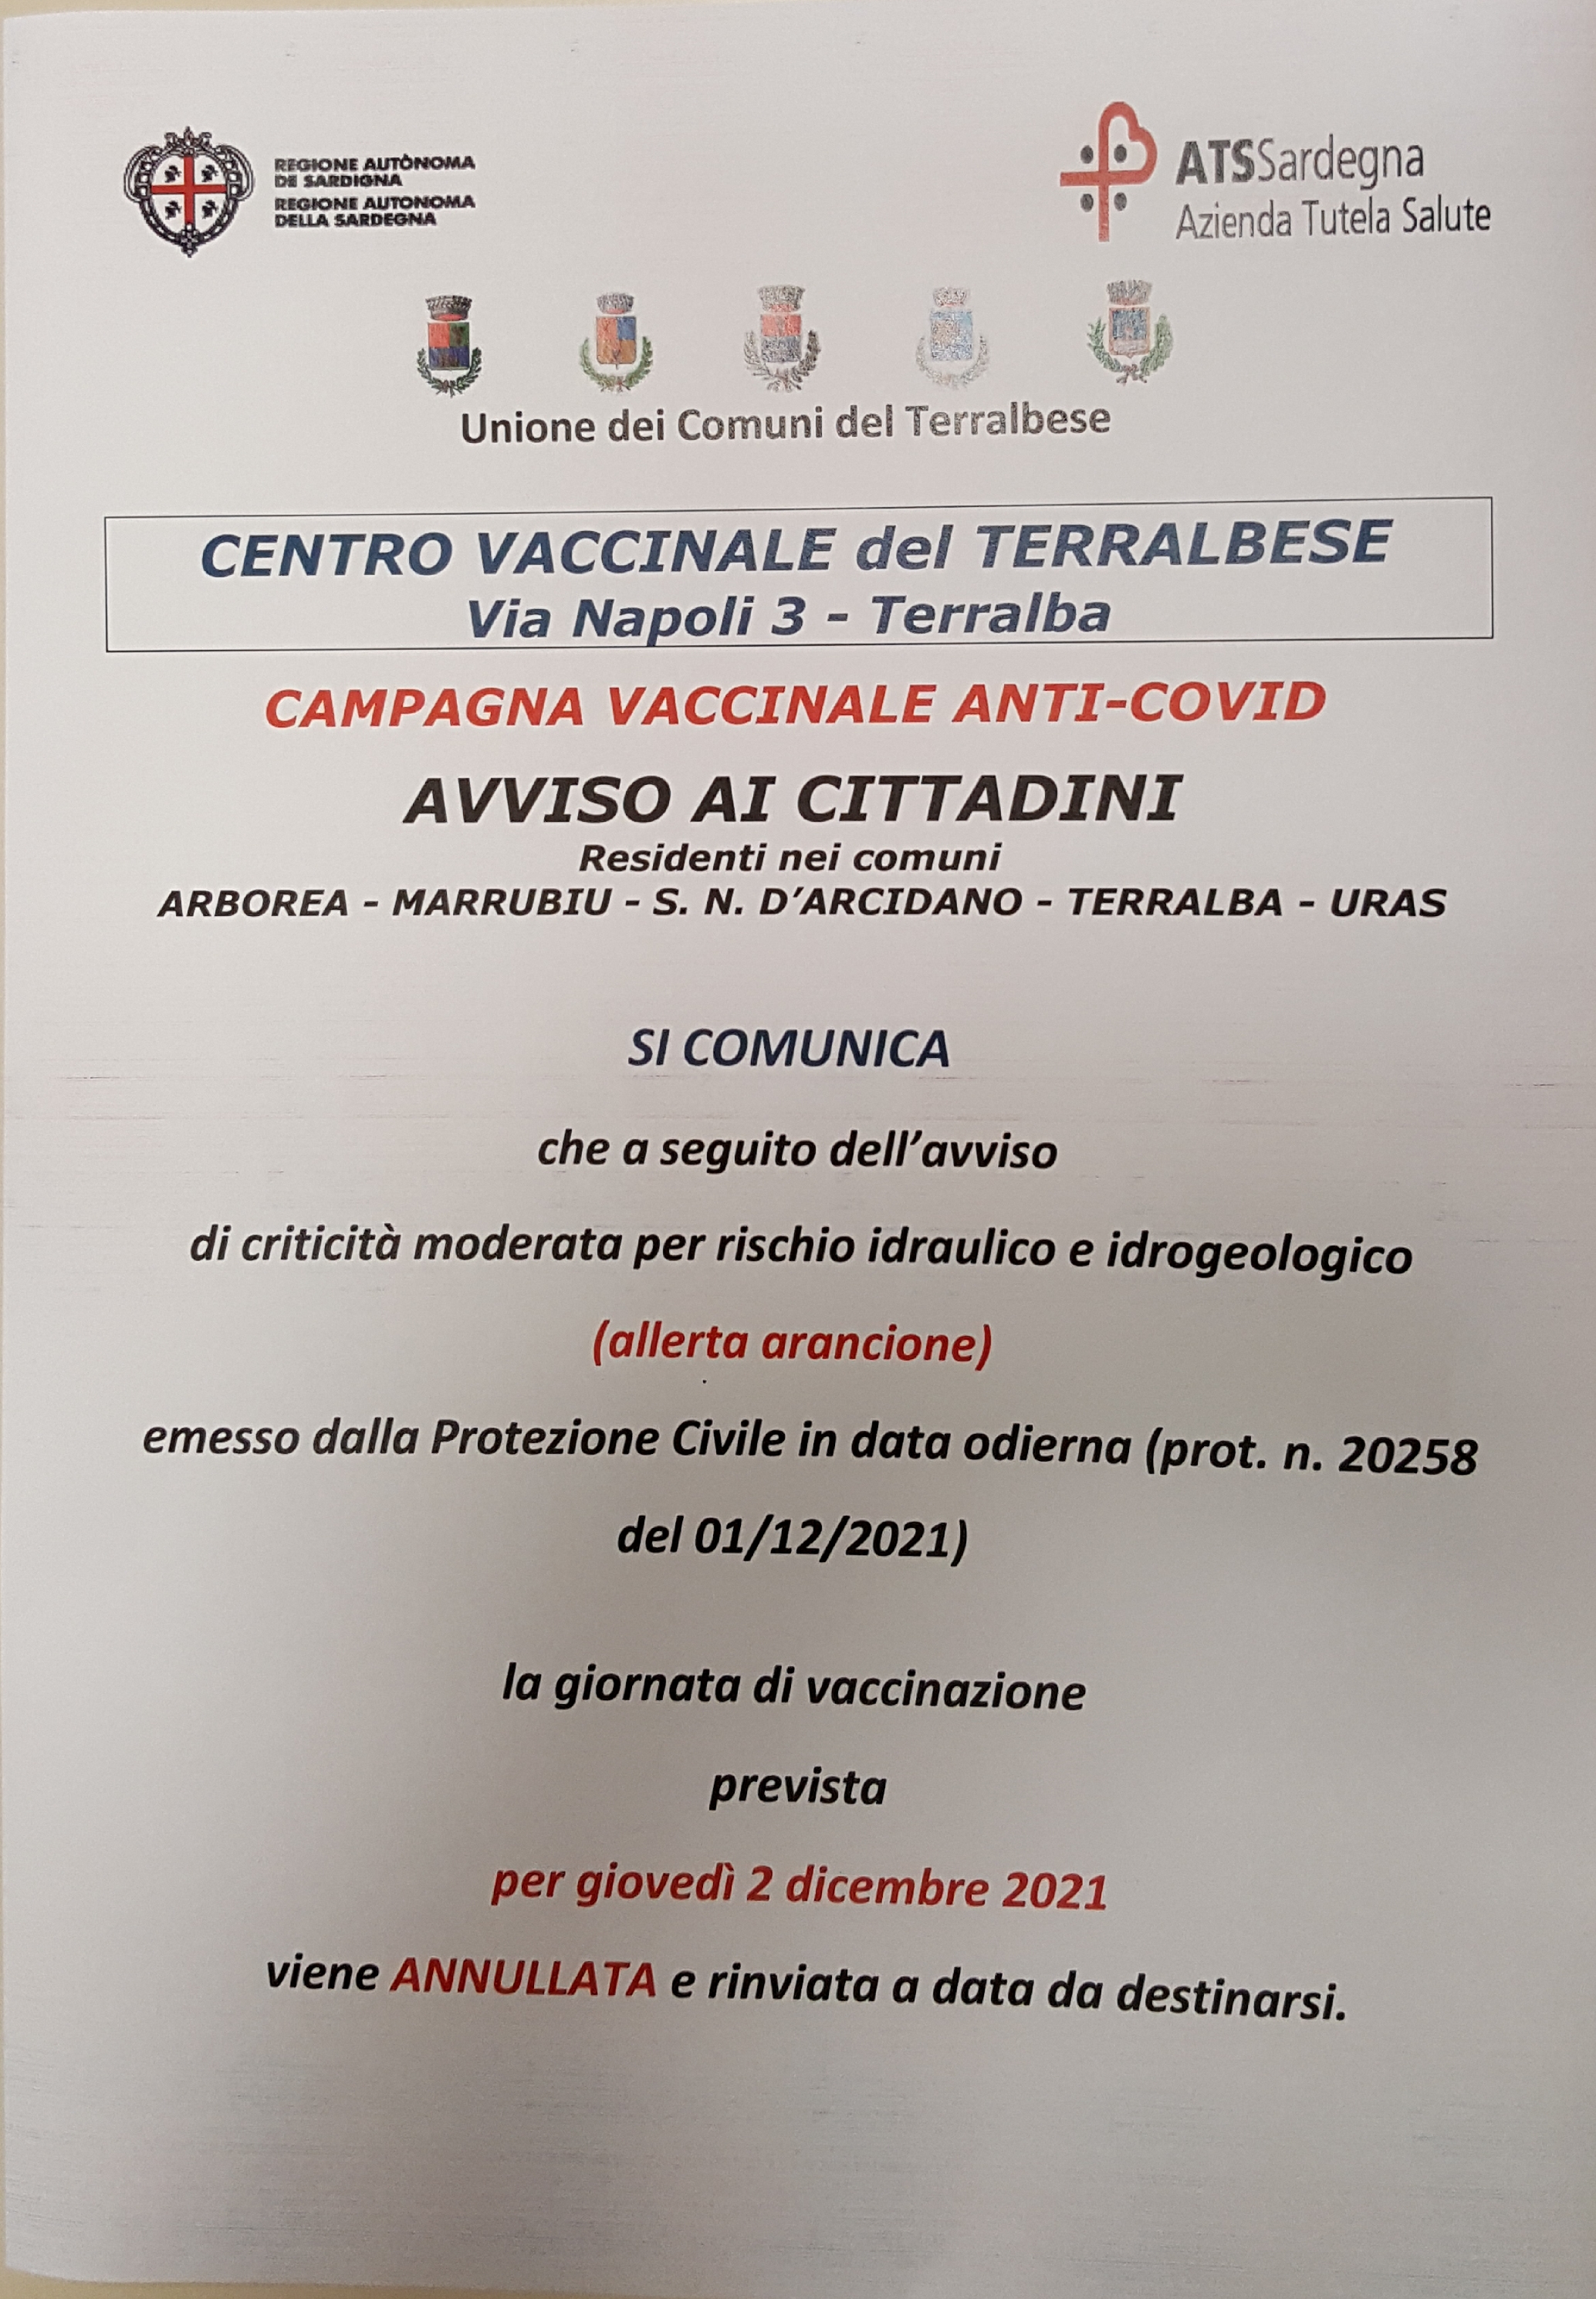 Annullamento giornata vaccinale prevista per il giorno giovedì 2 dicembre 2021.